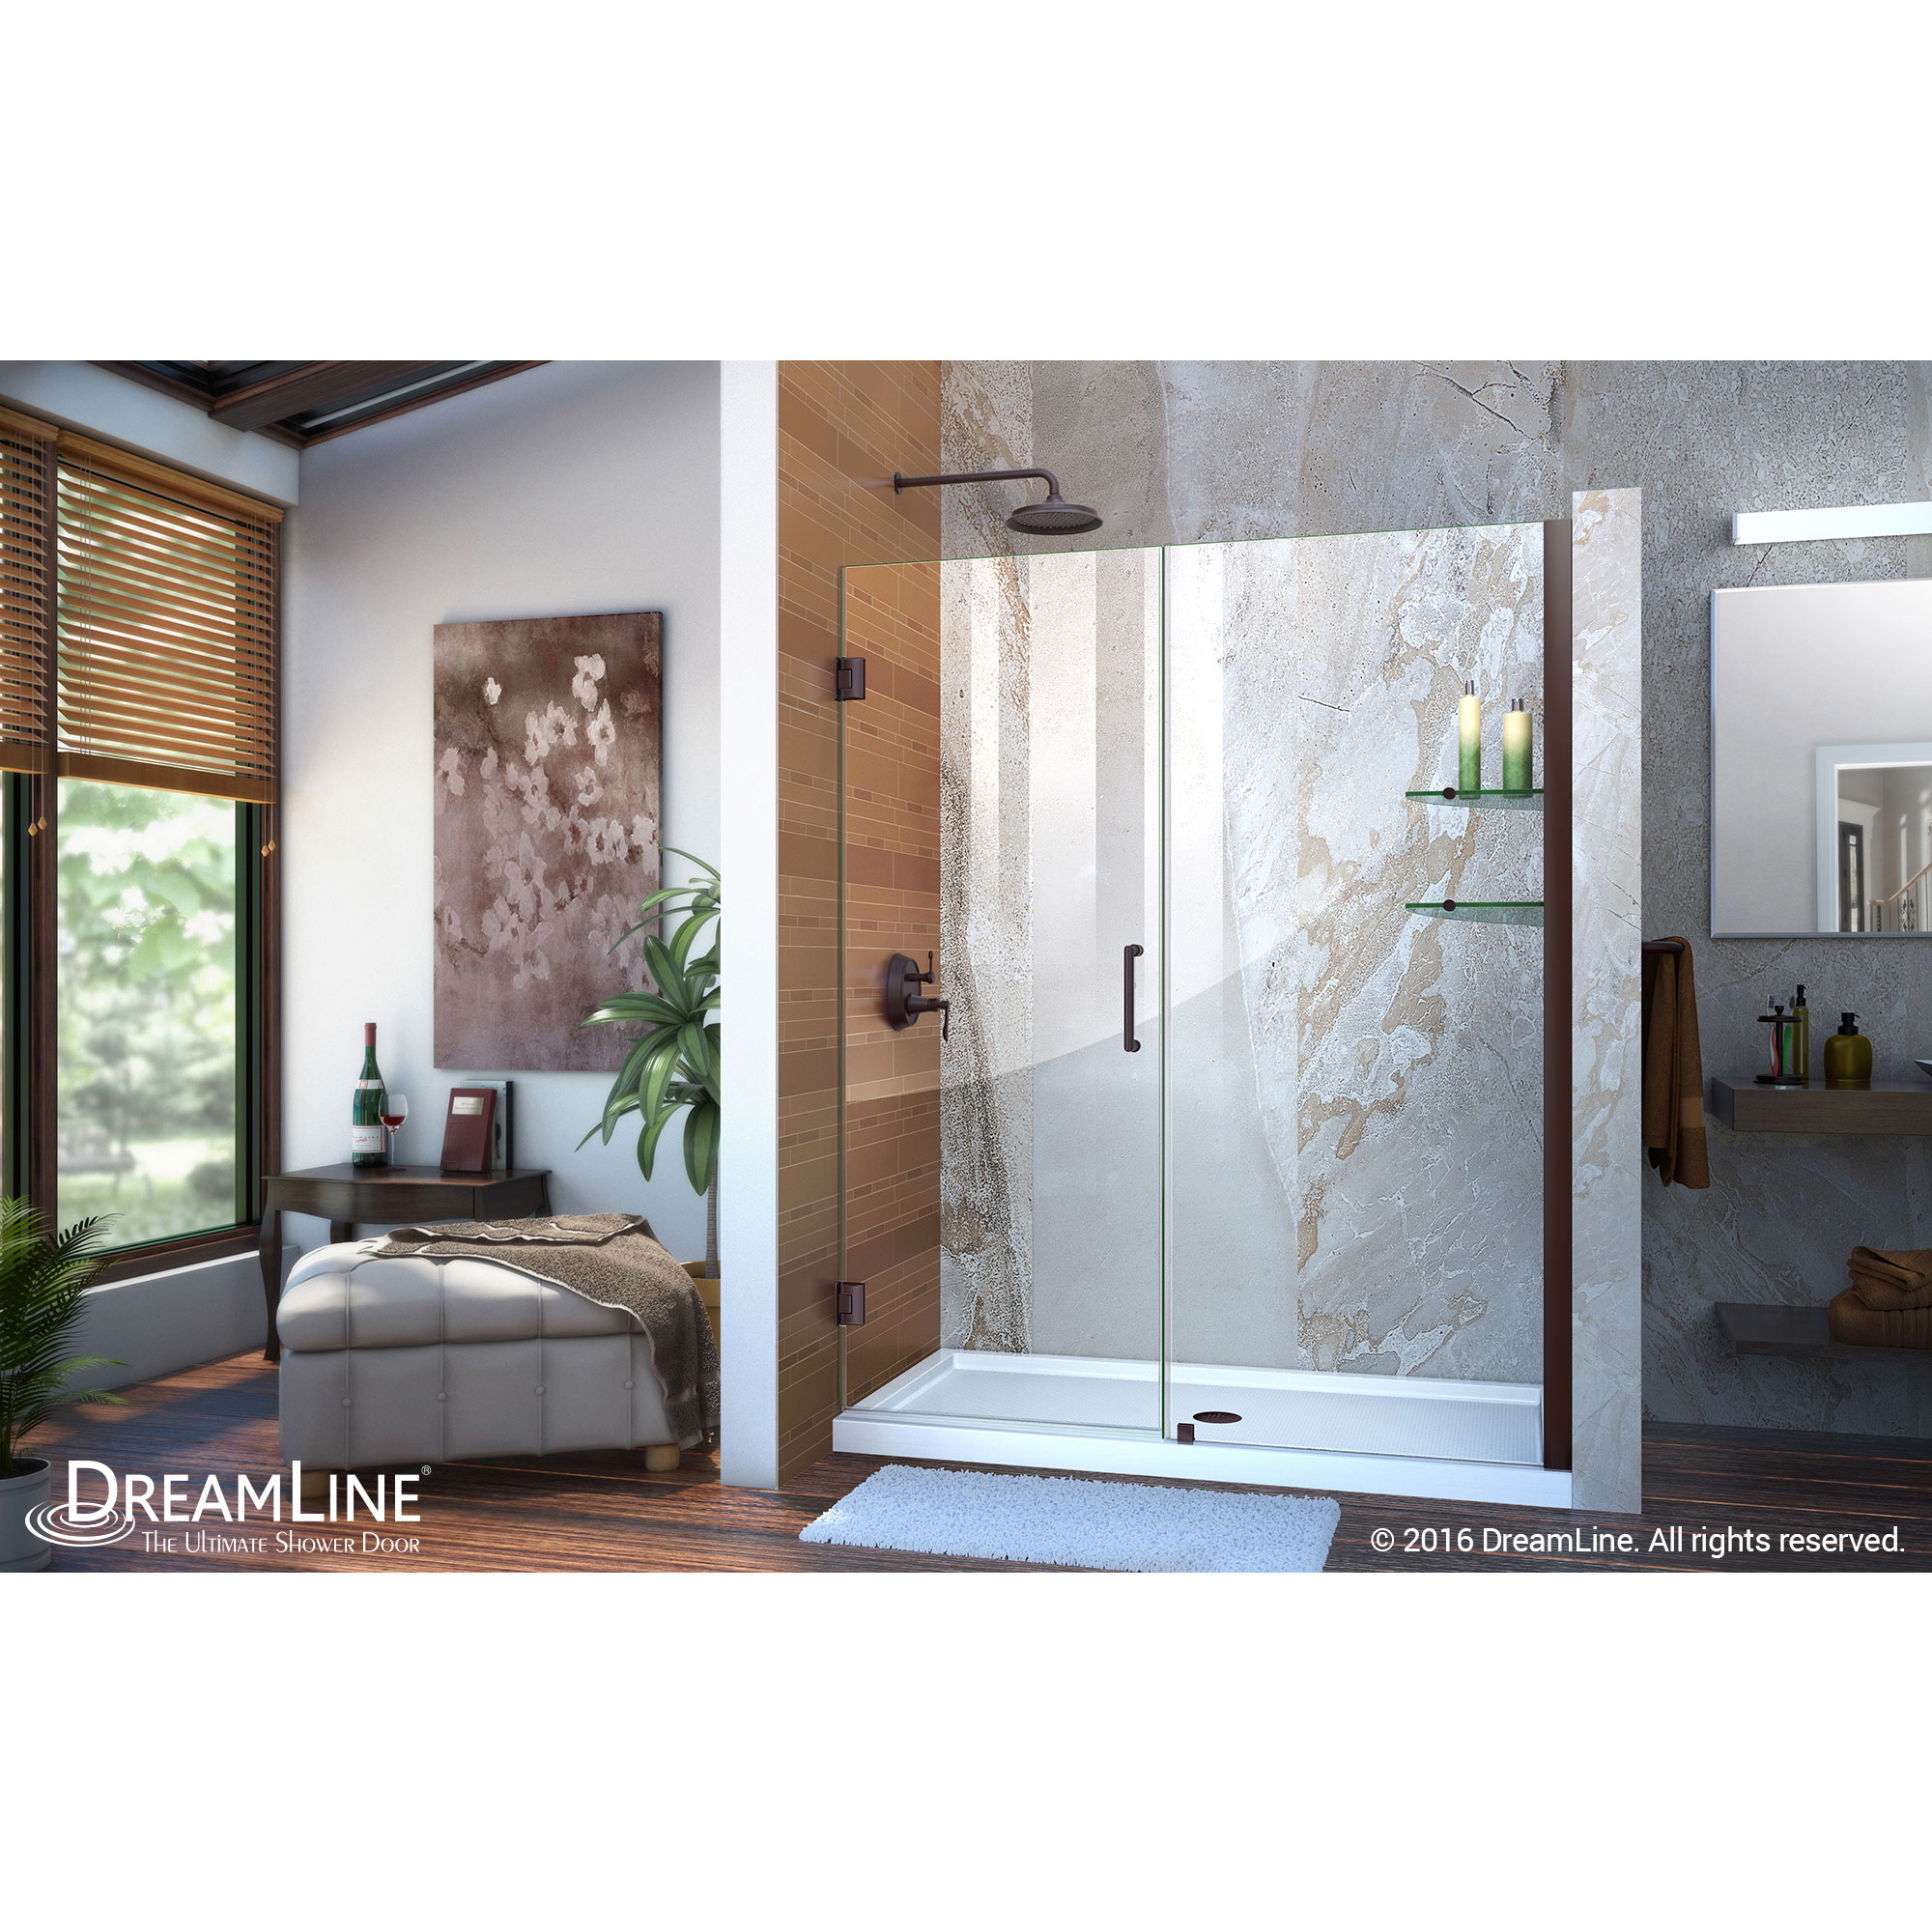 Unidoor 57 to 58" Frameless Hinged Shower Door, Clear 3/8" Glass Door, Oil Rubbed Bronze